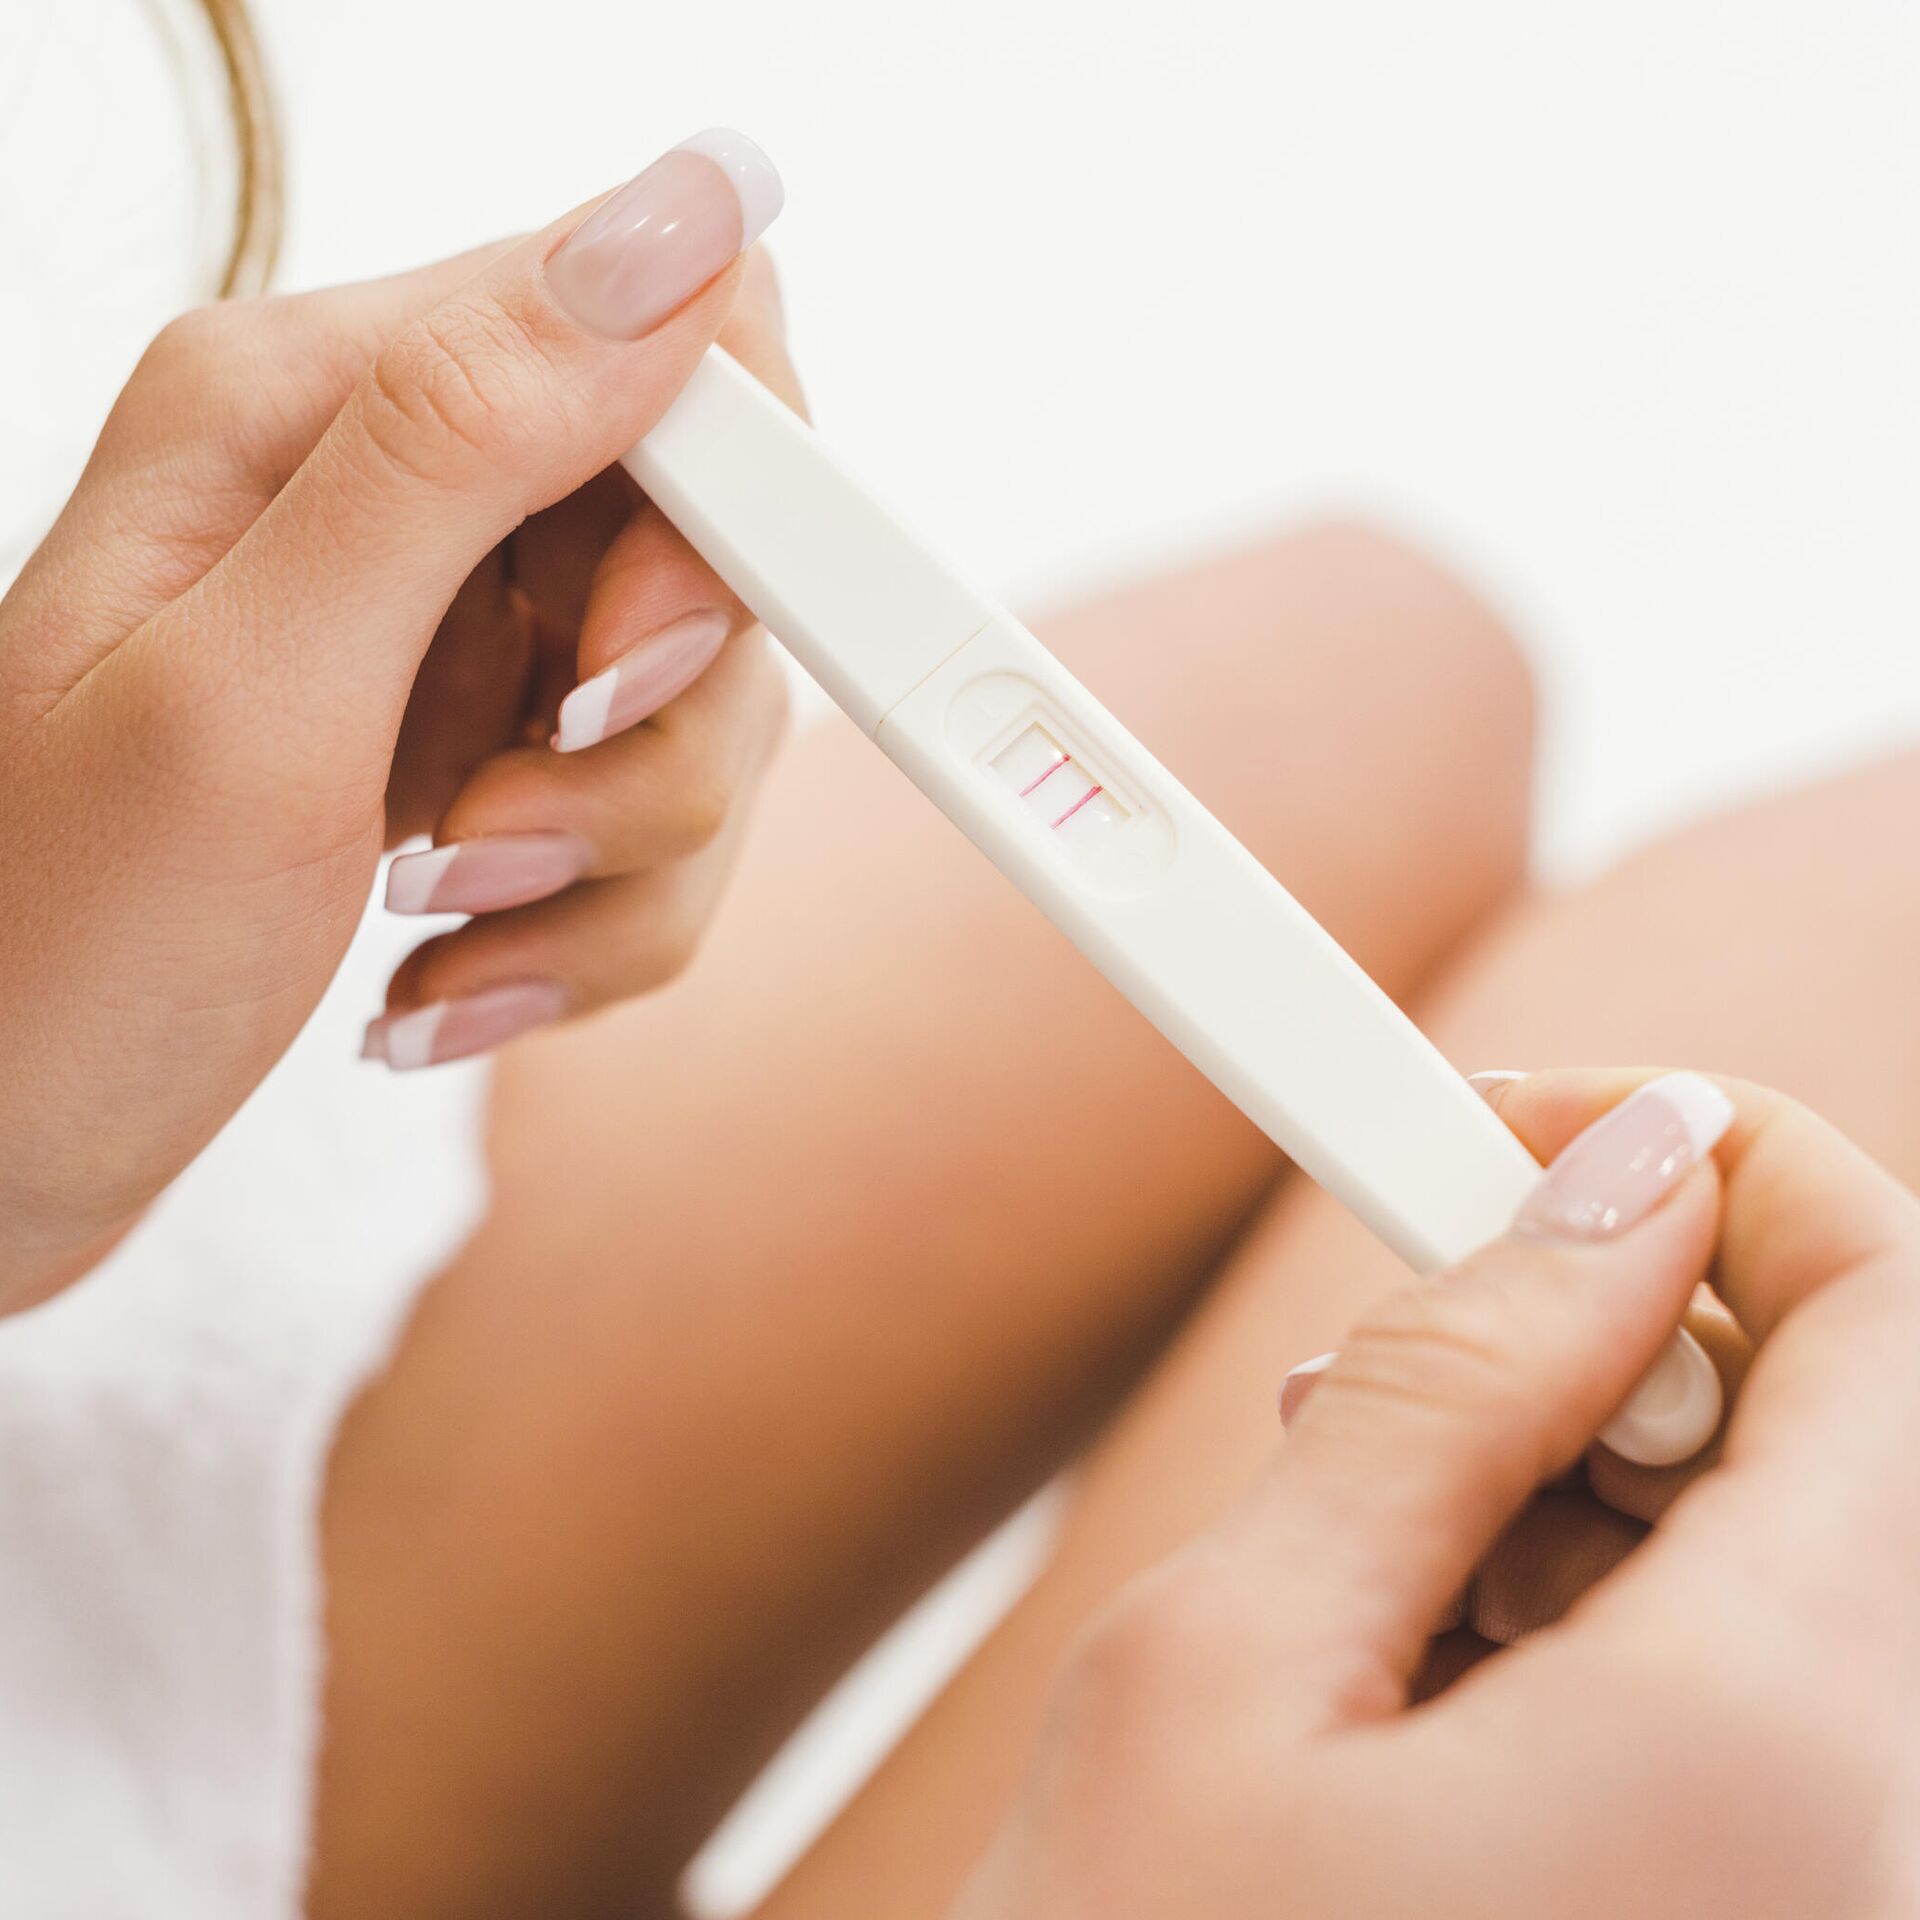 ᐉ Как делать тест на беременность | Как правильно пользоваться тестом